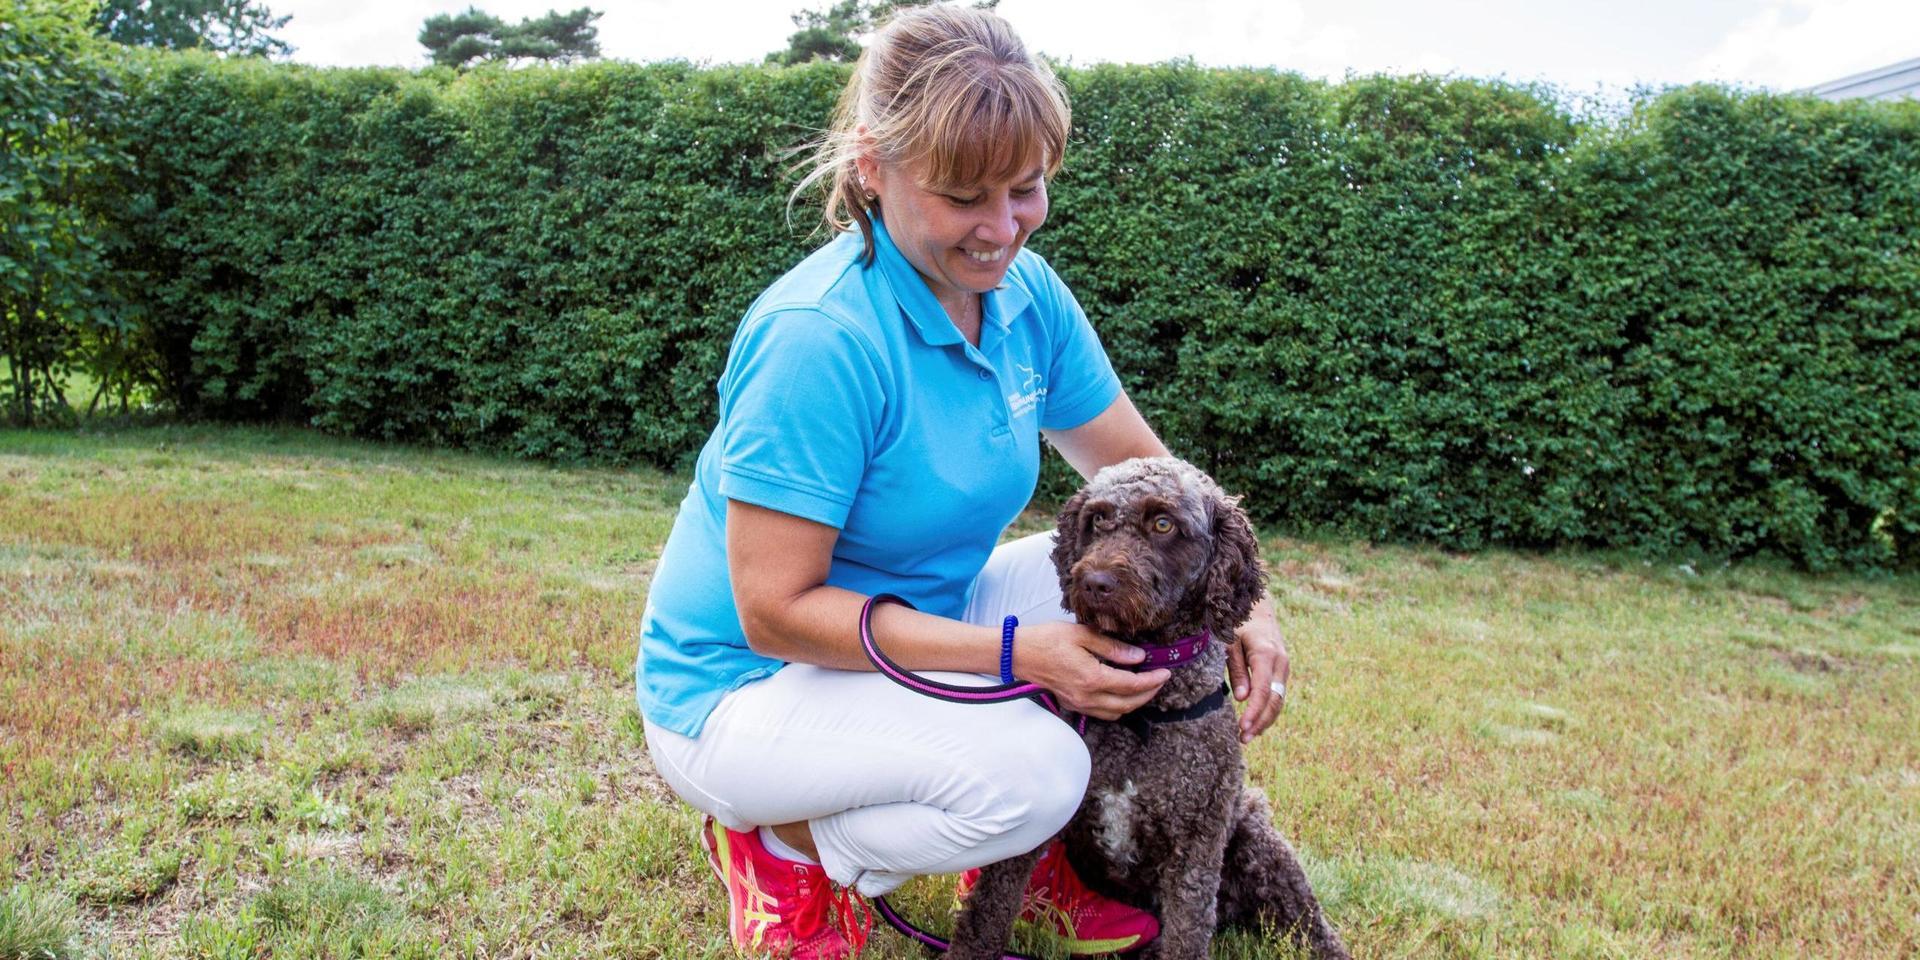 Fler hundar i vården! Det tycker Carina Vettebrand hade varit bra. Hon jobbar som sjukgymnast i äldreomsorgen har har sett flera gånger vilka positiva effekter hundar har i mötet med äldre personer. Men även med barn och andra som känner lugn och trygghet med ett djur.